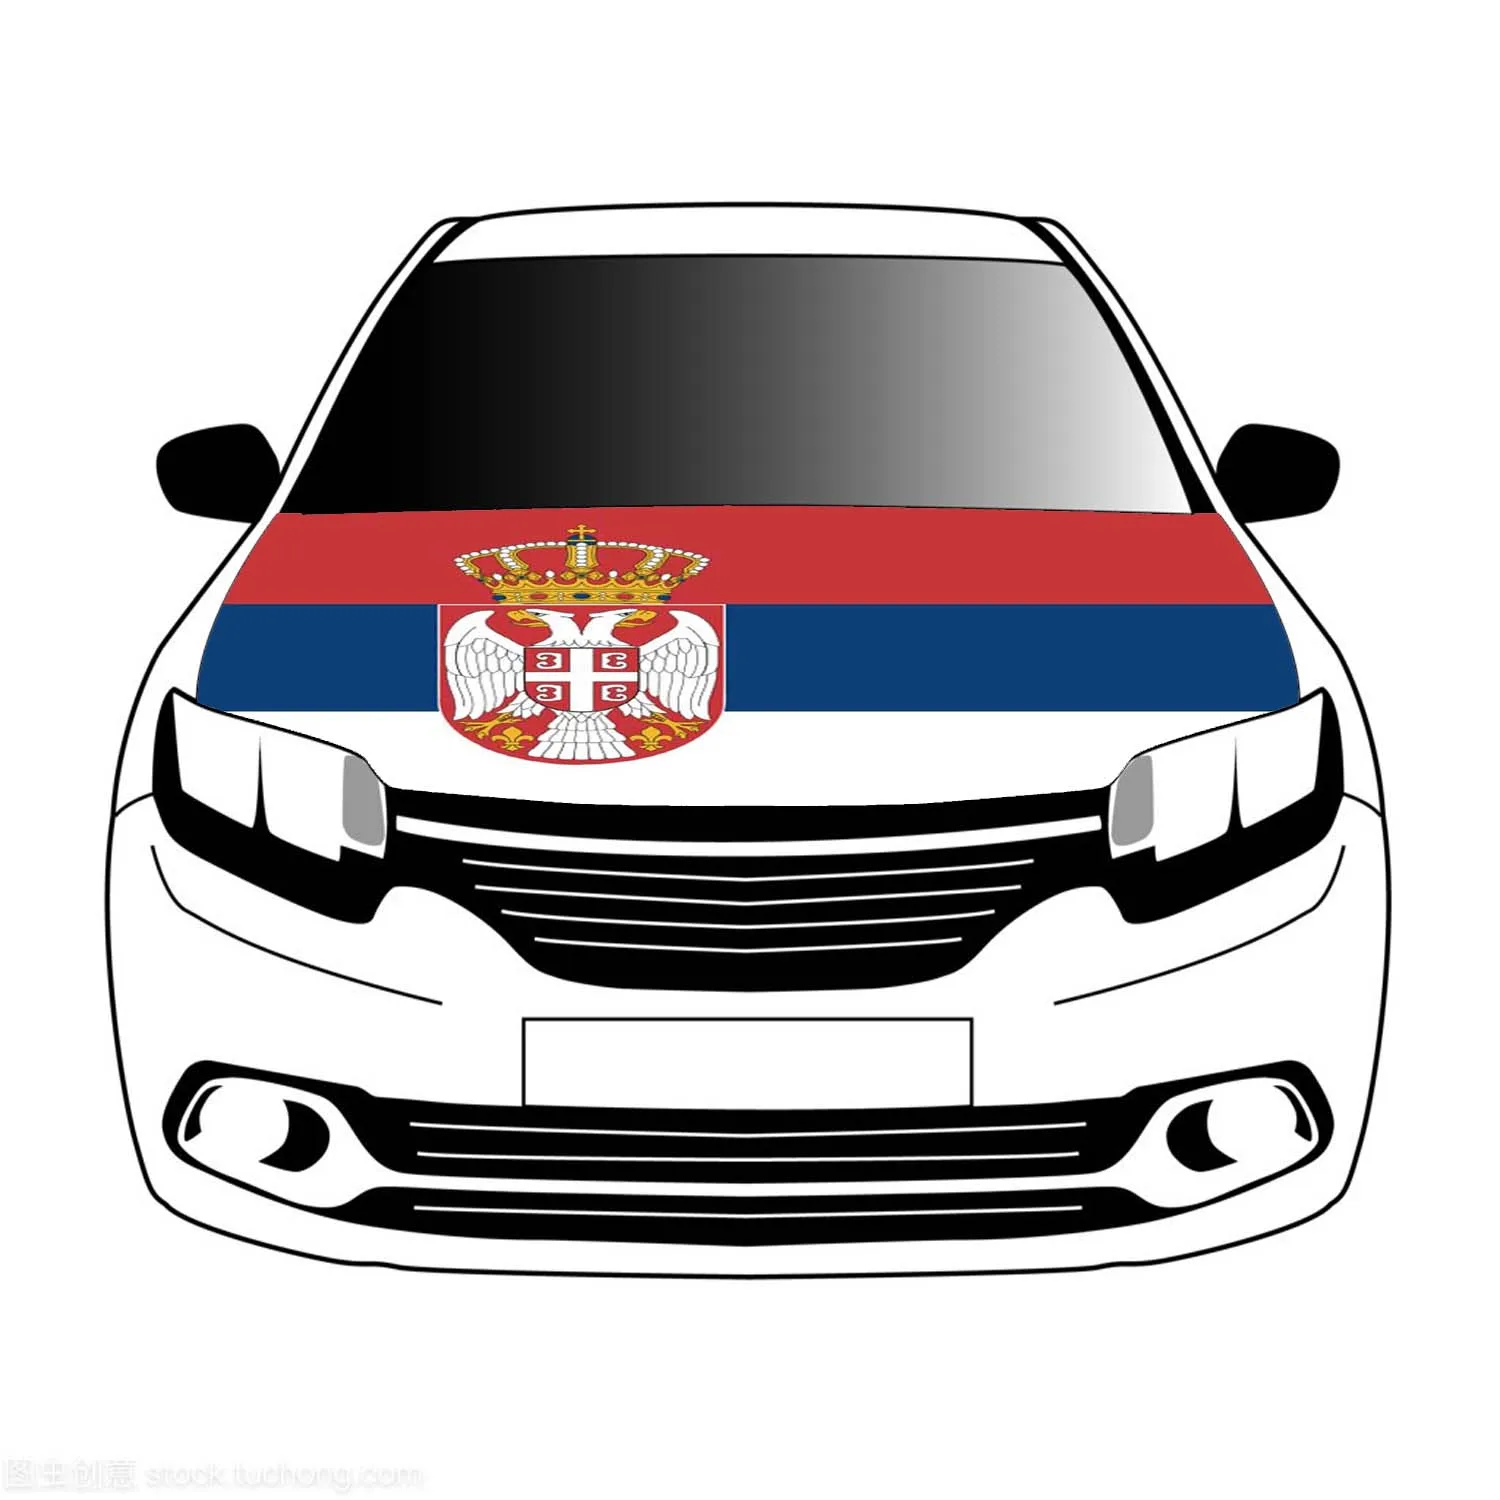 

Флаги Сербии накладка на капот автомобиля 100% x 5 футов/5x7 футов полиэстер, баннер для автомобильной капоты